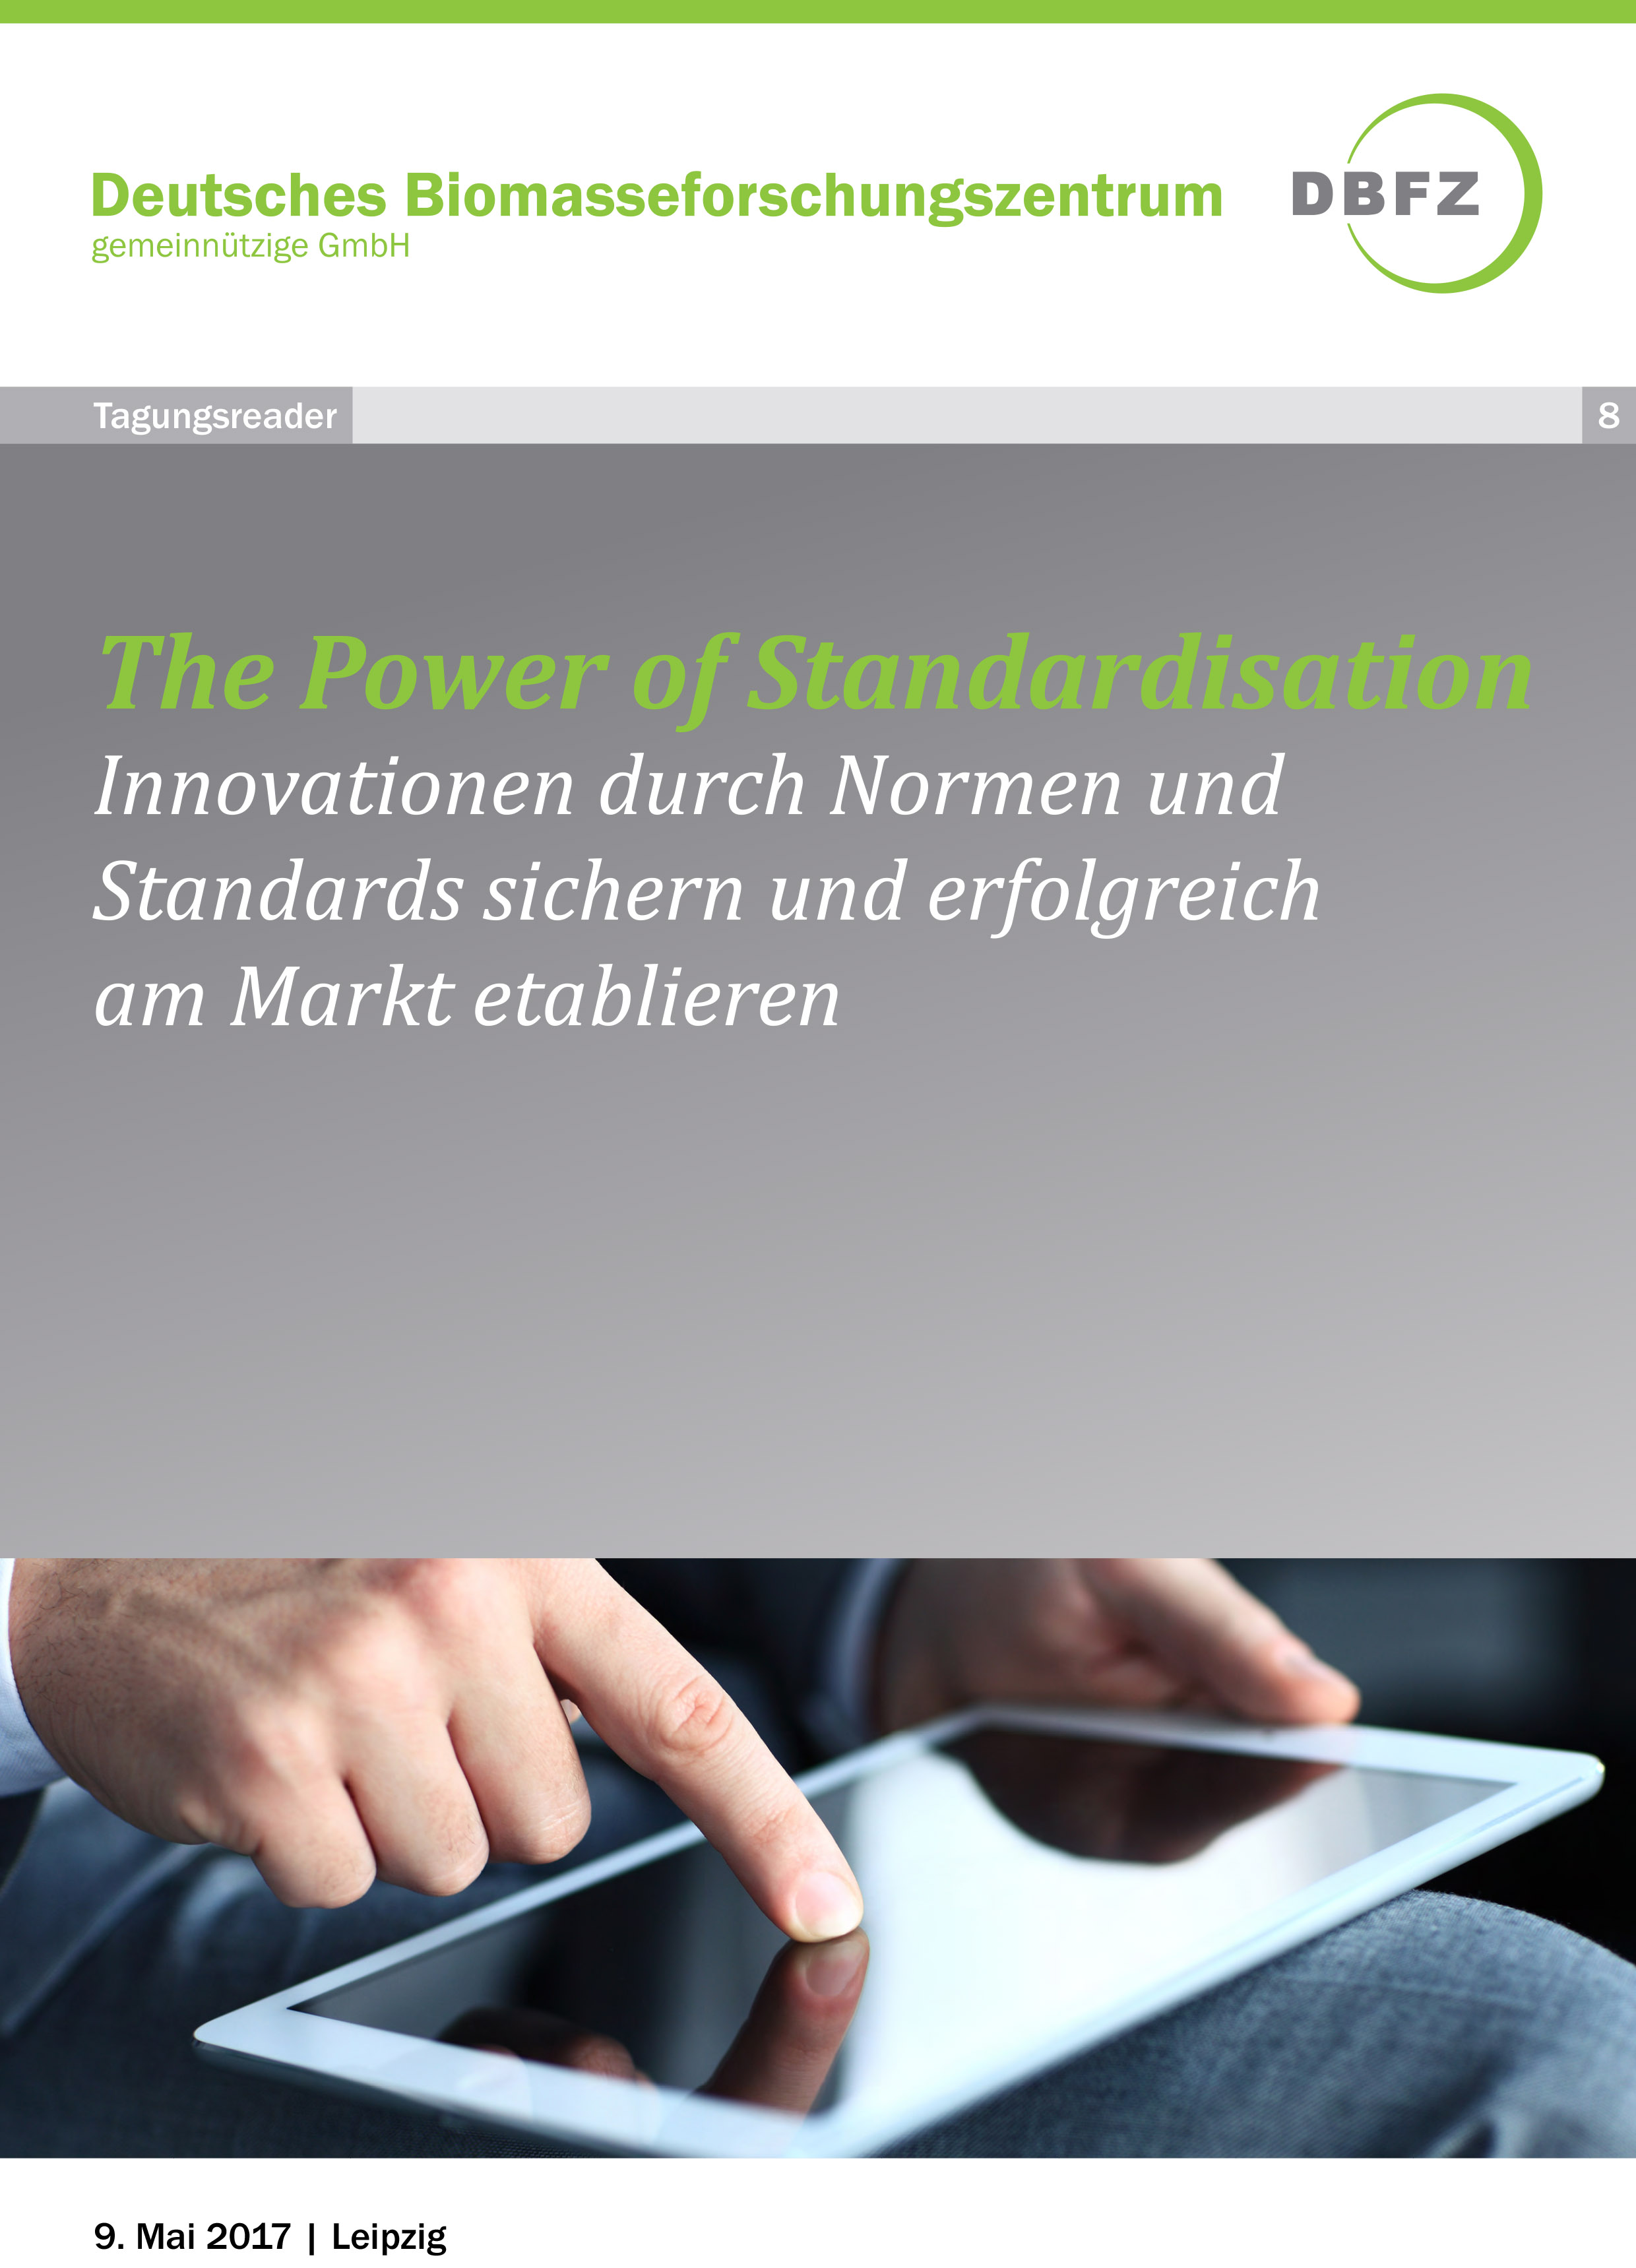 Workshop: The Power of Standardisation 